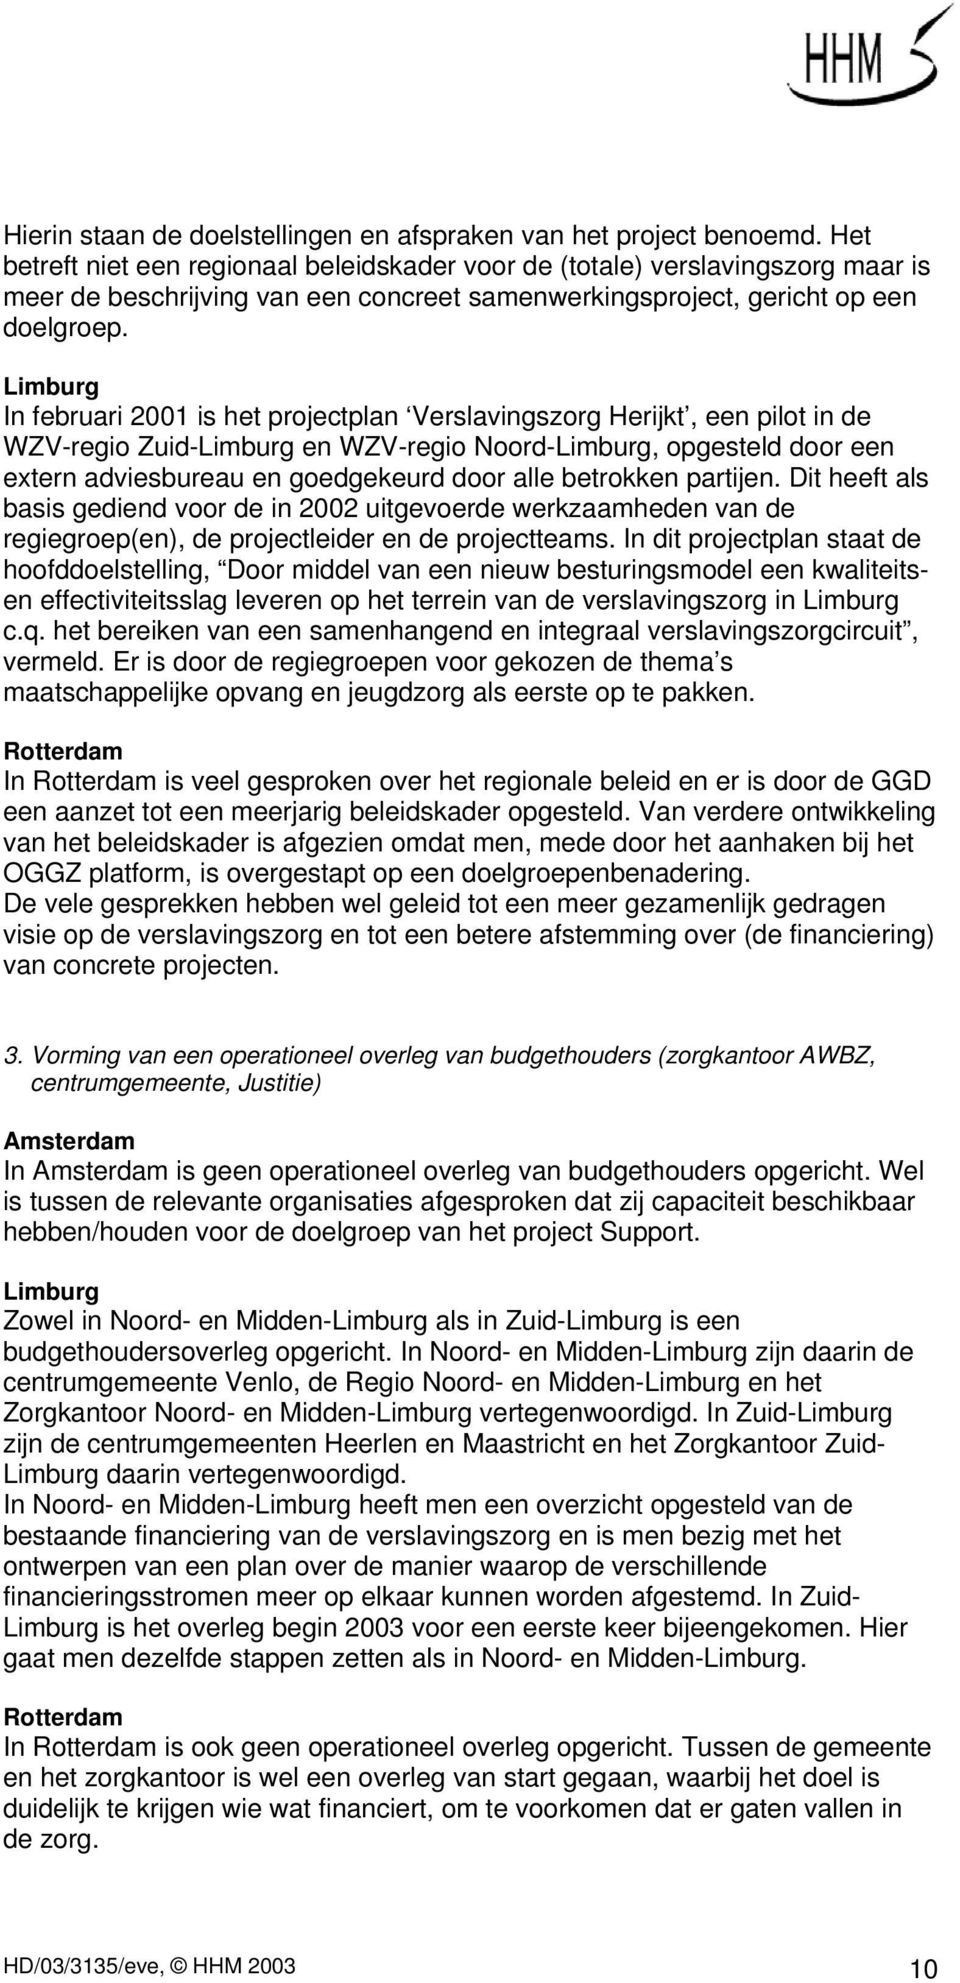 Limburg In februari 2001 is het projectplan Verslavingszorg Herijkt, een pilot in de WZV-regio Zuid-Limburg en WZV-regio Noord-Limburg, opgesteld door een extern adviesbureau en goedgekeurd door alle